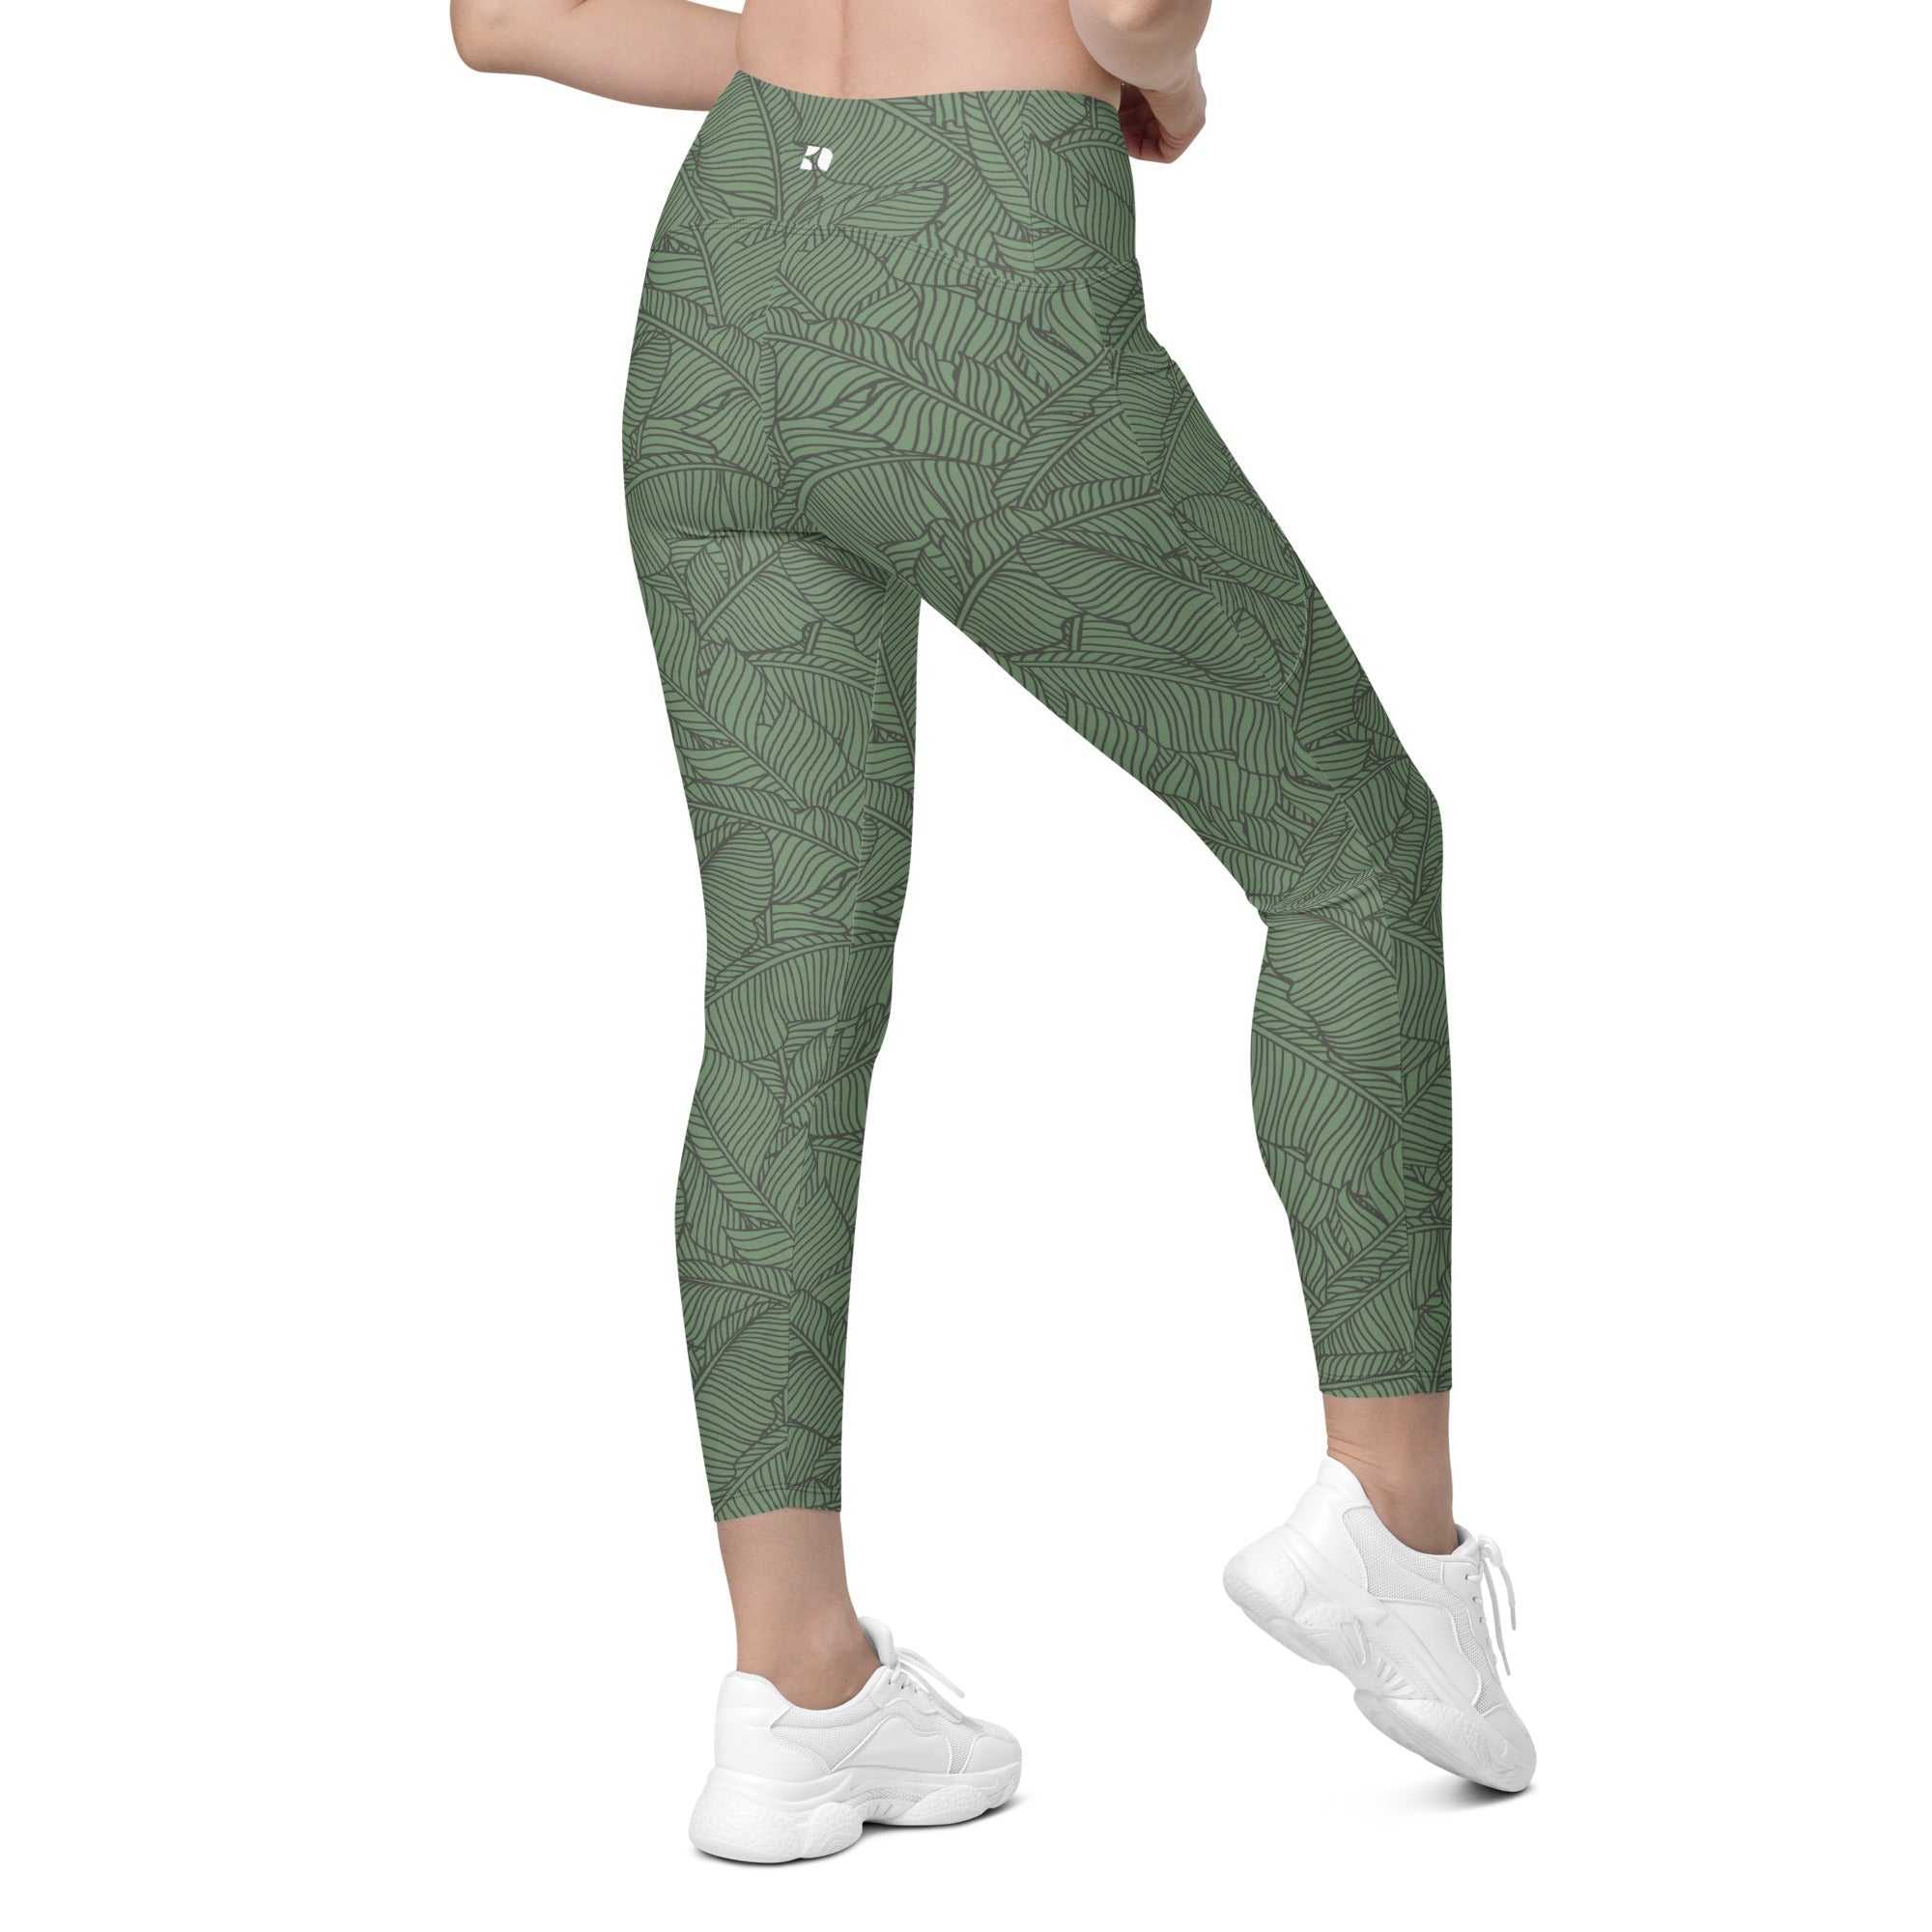 Torrid 2X Leggings Sweater Knit Jacquard Green Plaid Plus Size Mid Rise  Pants